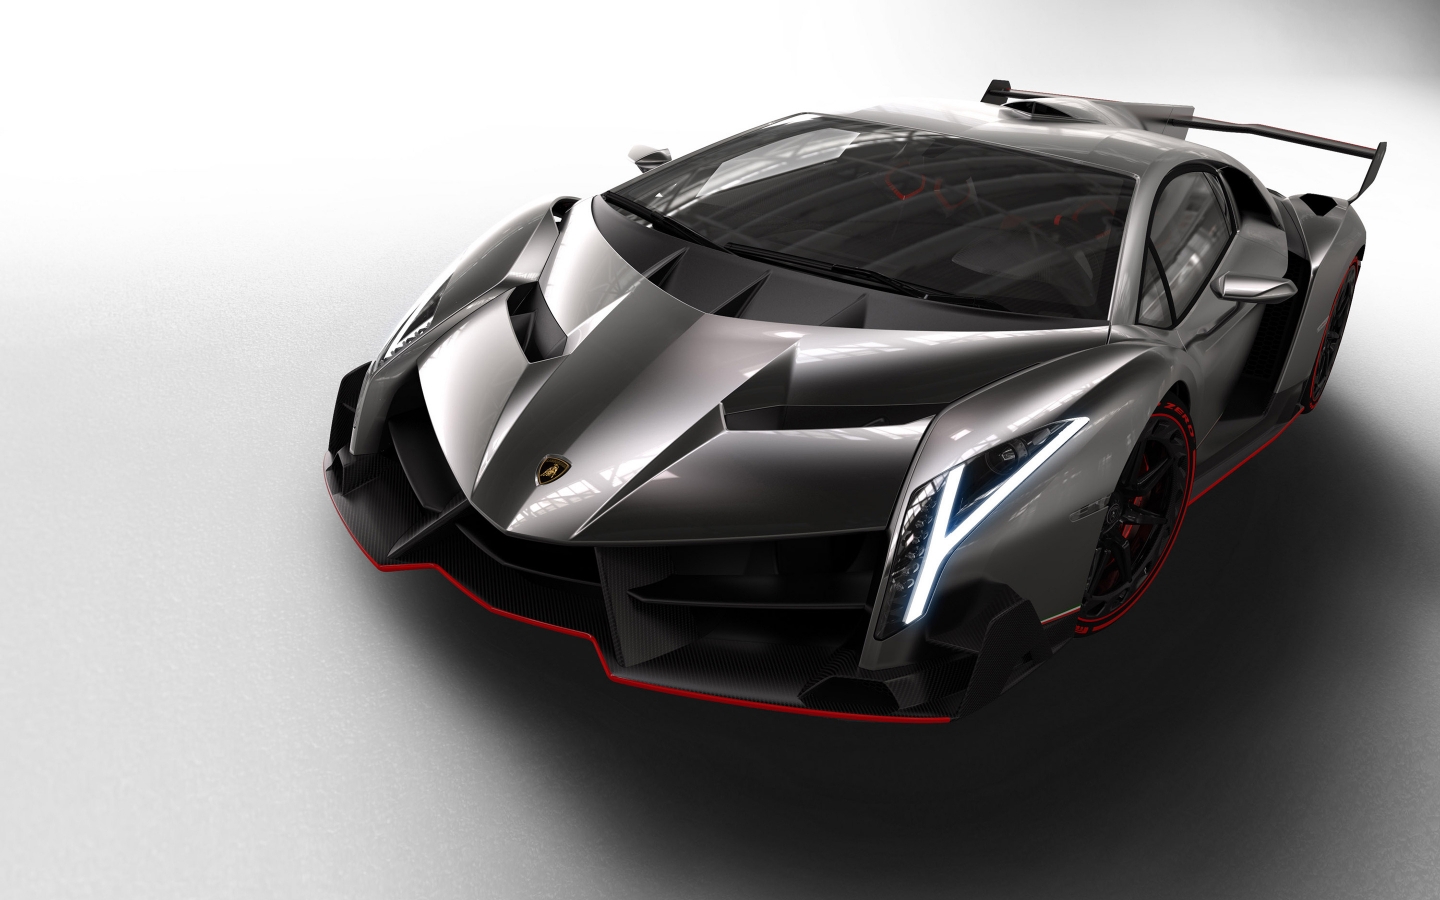 Lamborghini Veneno Studio for 1440 x 900 widescreen resolution